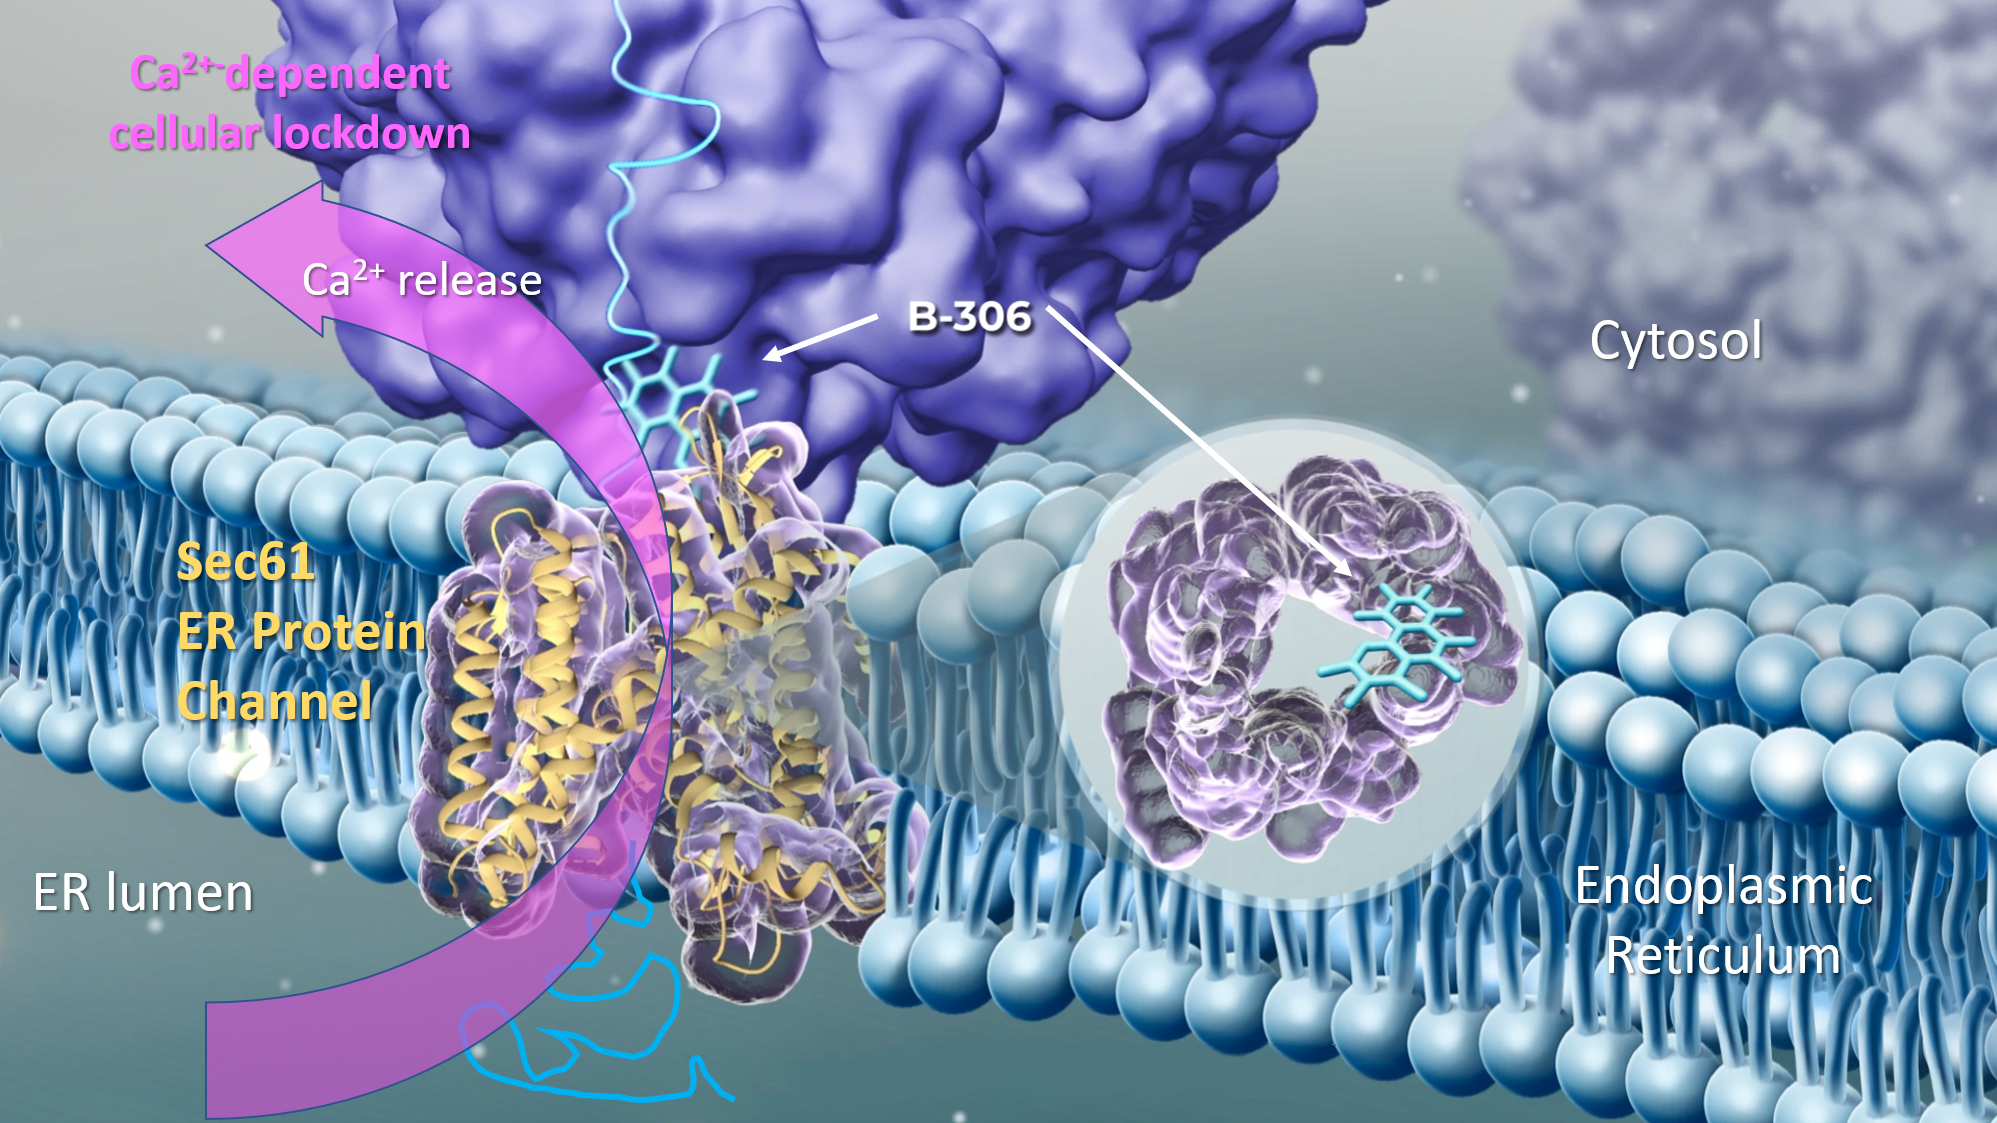 Zu sehen ist eine zeichnerische Darstellung der ER-Membran mit Sec61 Kanal, an den das B-306 Molekül bindet. Ein pinker Pfeil verdeutlicht den Calcium-Ausstrom ins Cytosol.